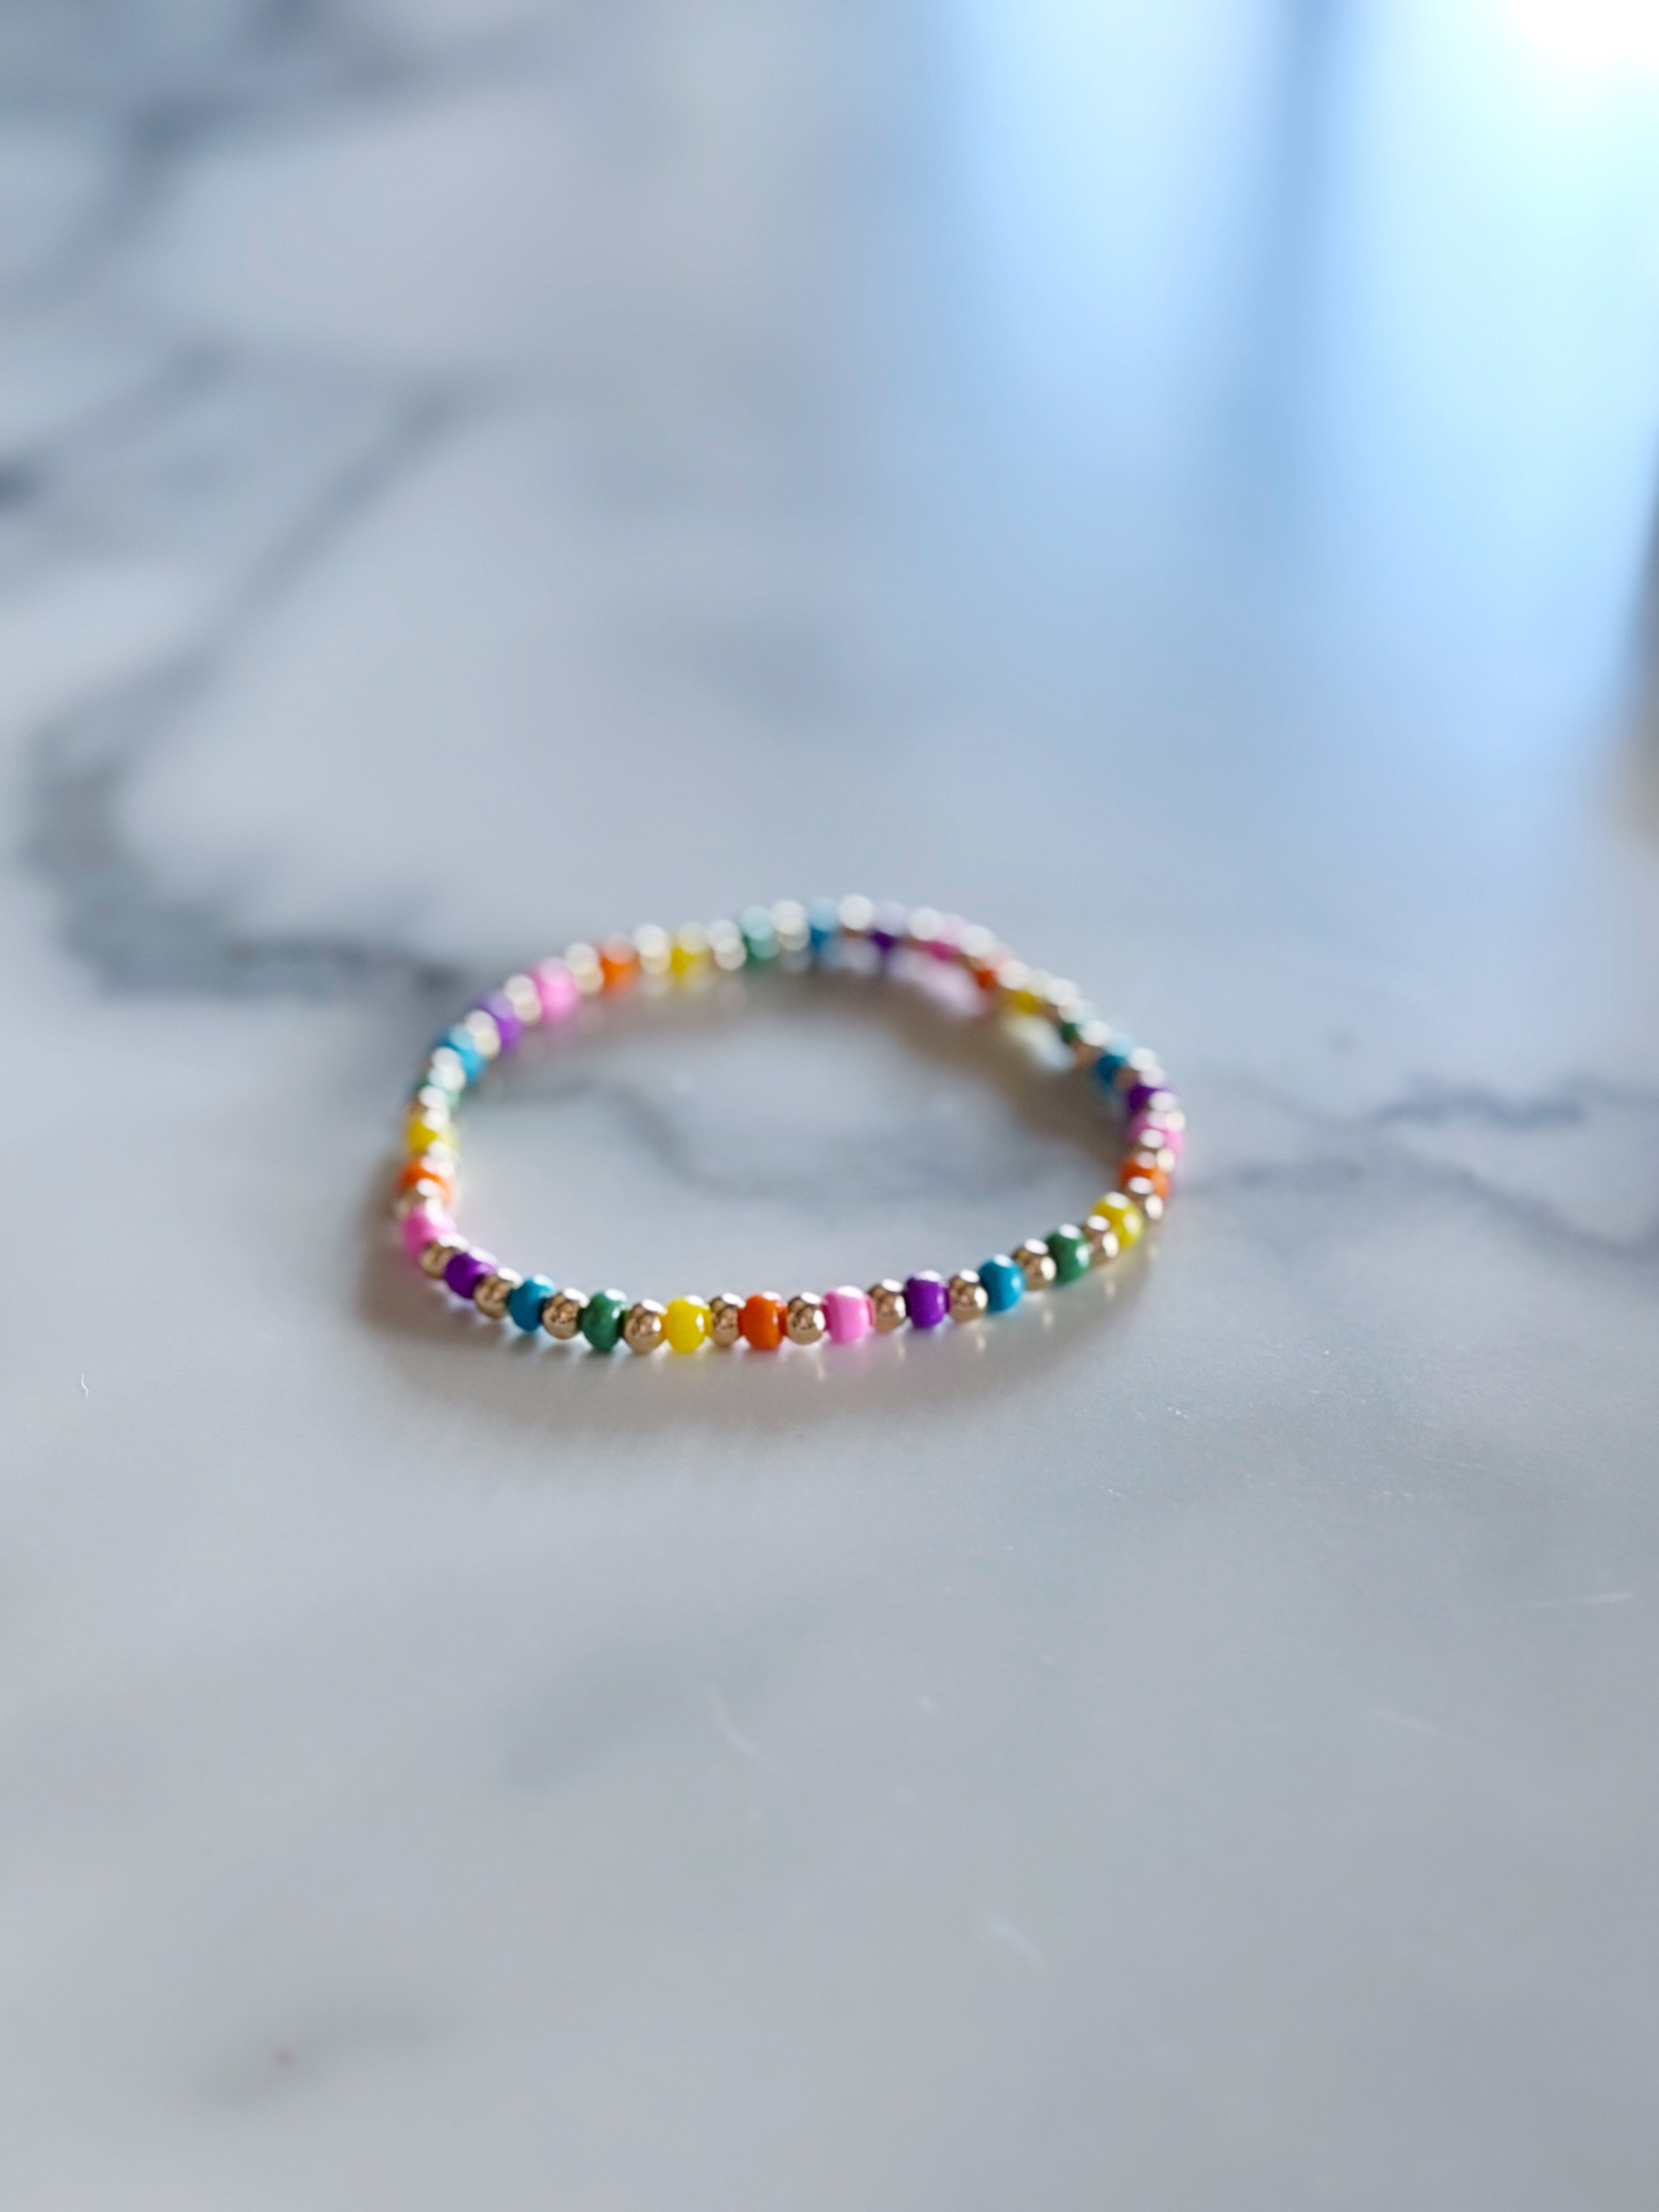 The Classic Rainbow Bracelet